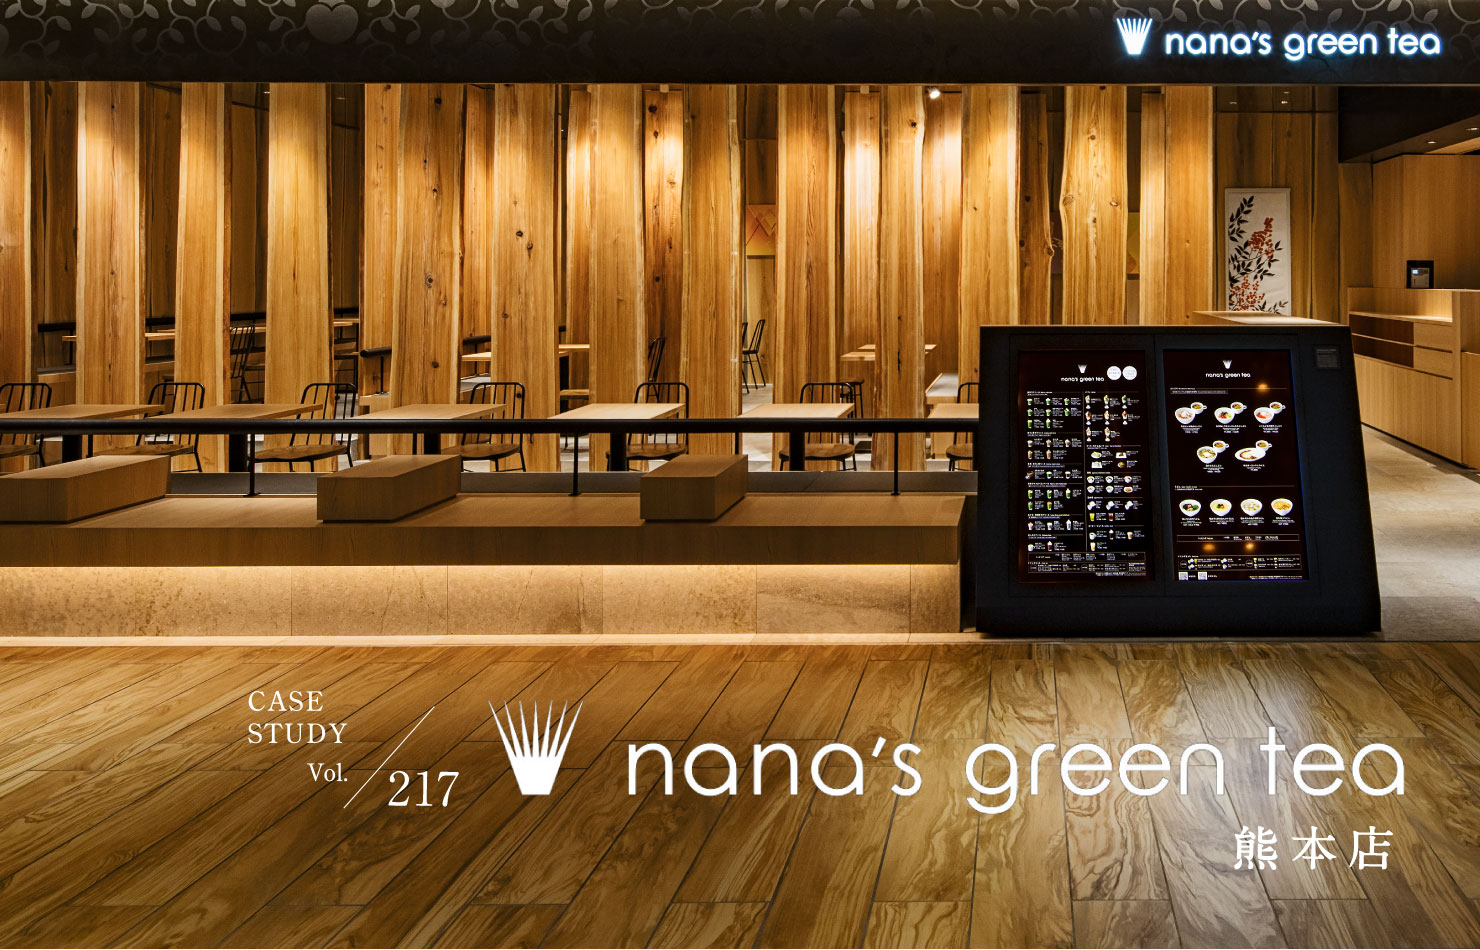 CASE STUDY Vol.217 nana's green tea 熊本店